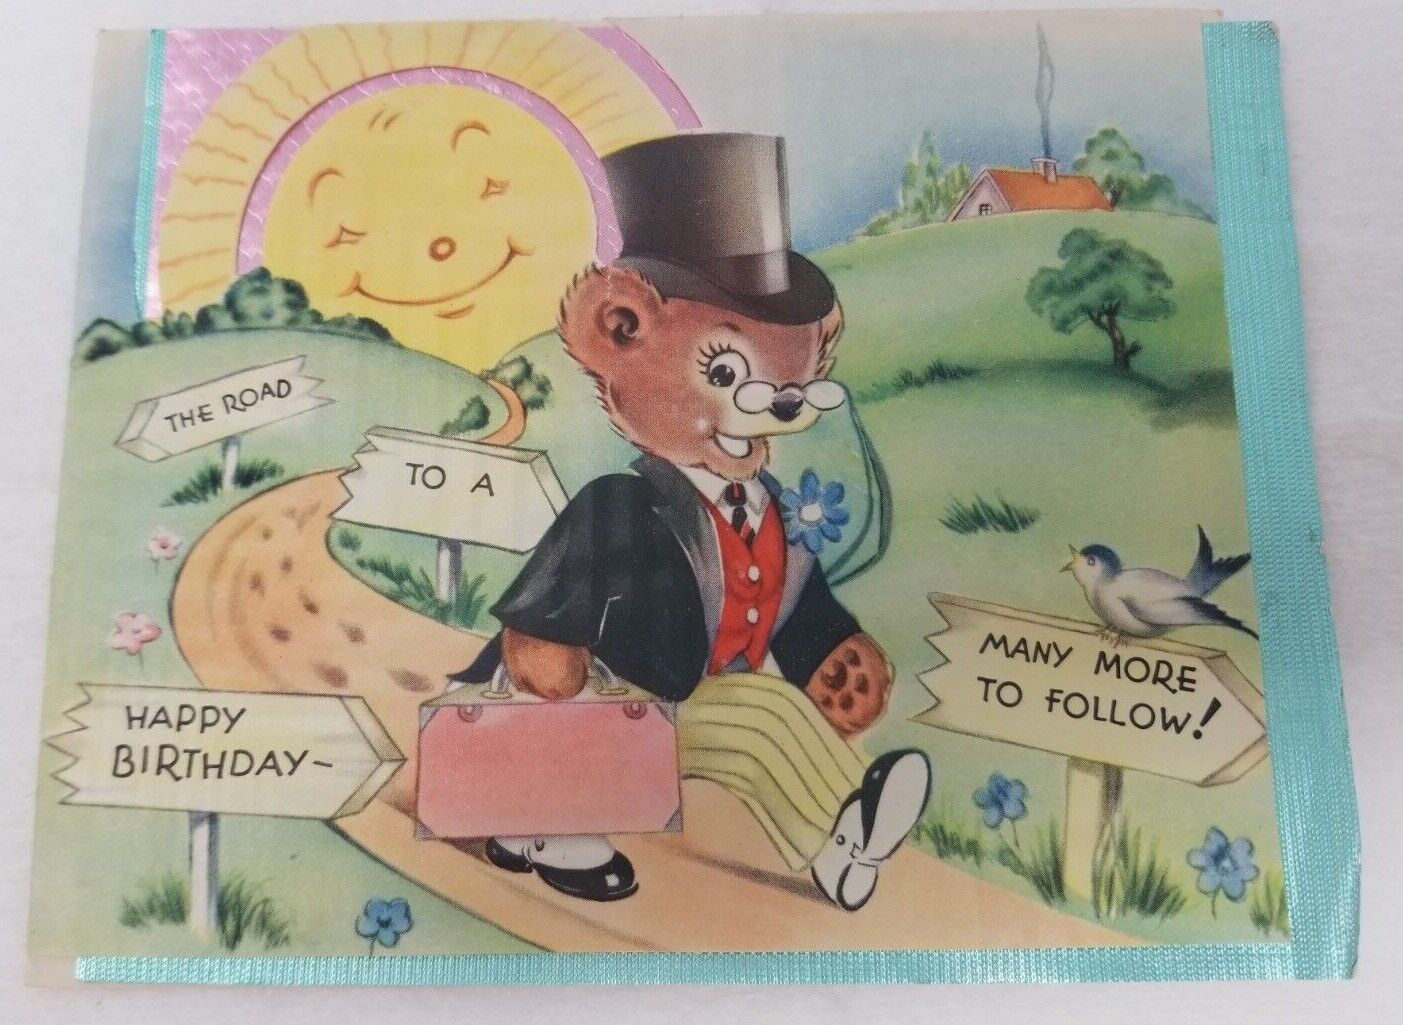 Birthday Card 1930s Teddy Bear Mixed Media The Road to a Happy Birthday Signed